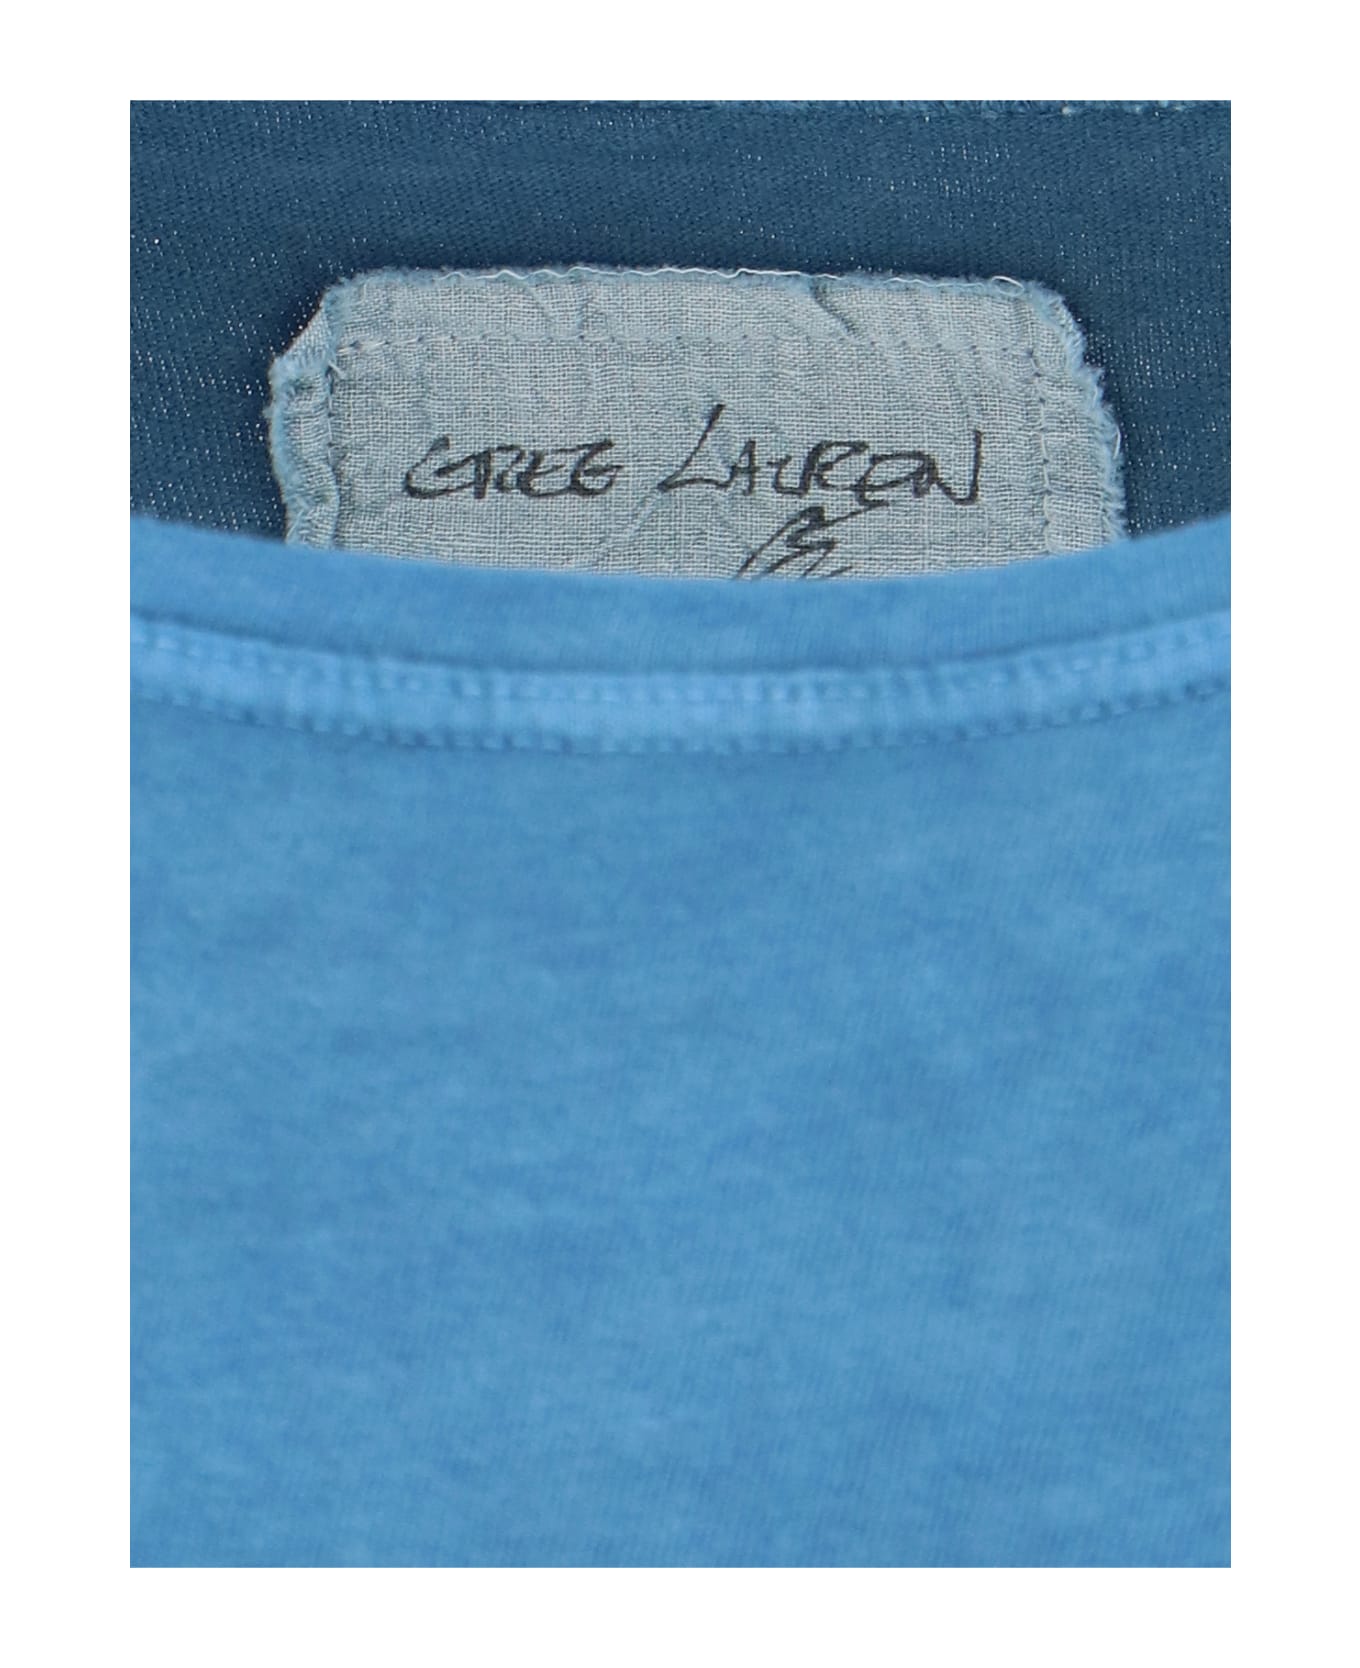 Greg Lauren 'gl' Print T-shirt - Light Blue